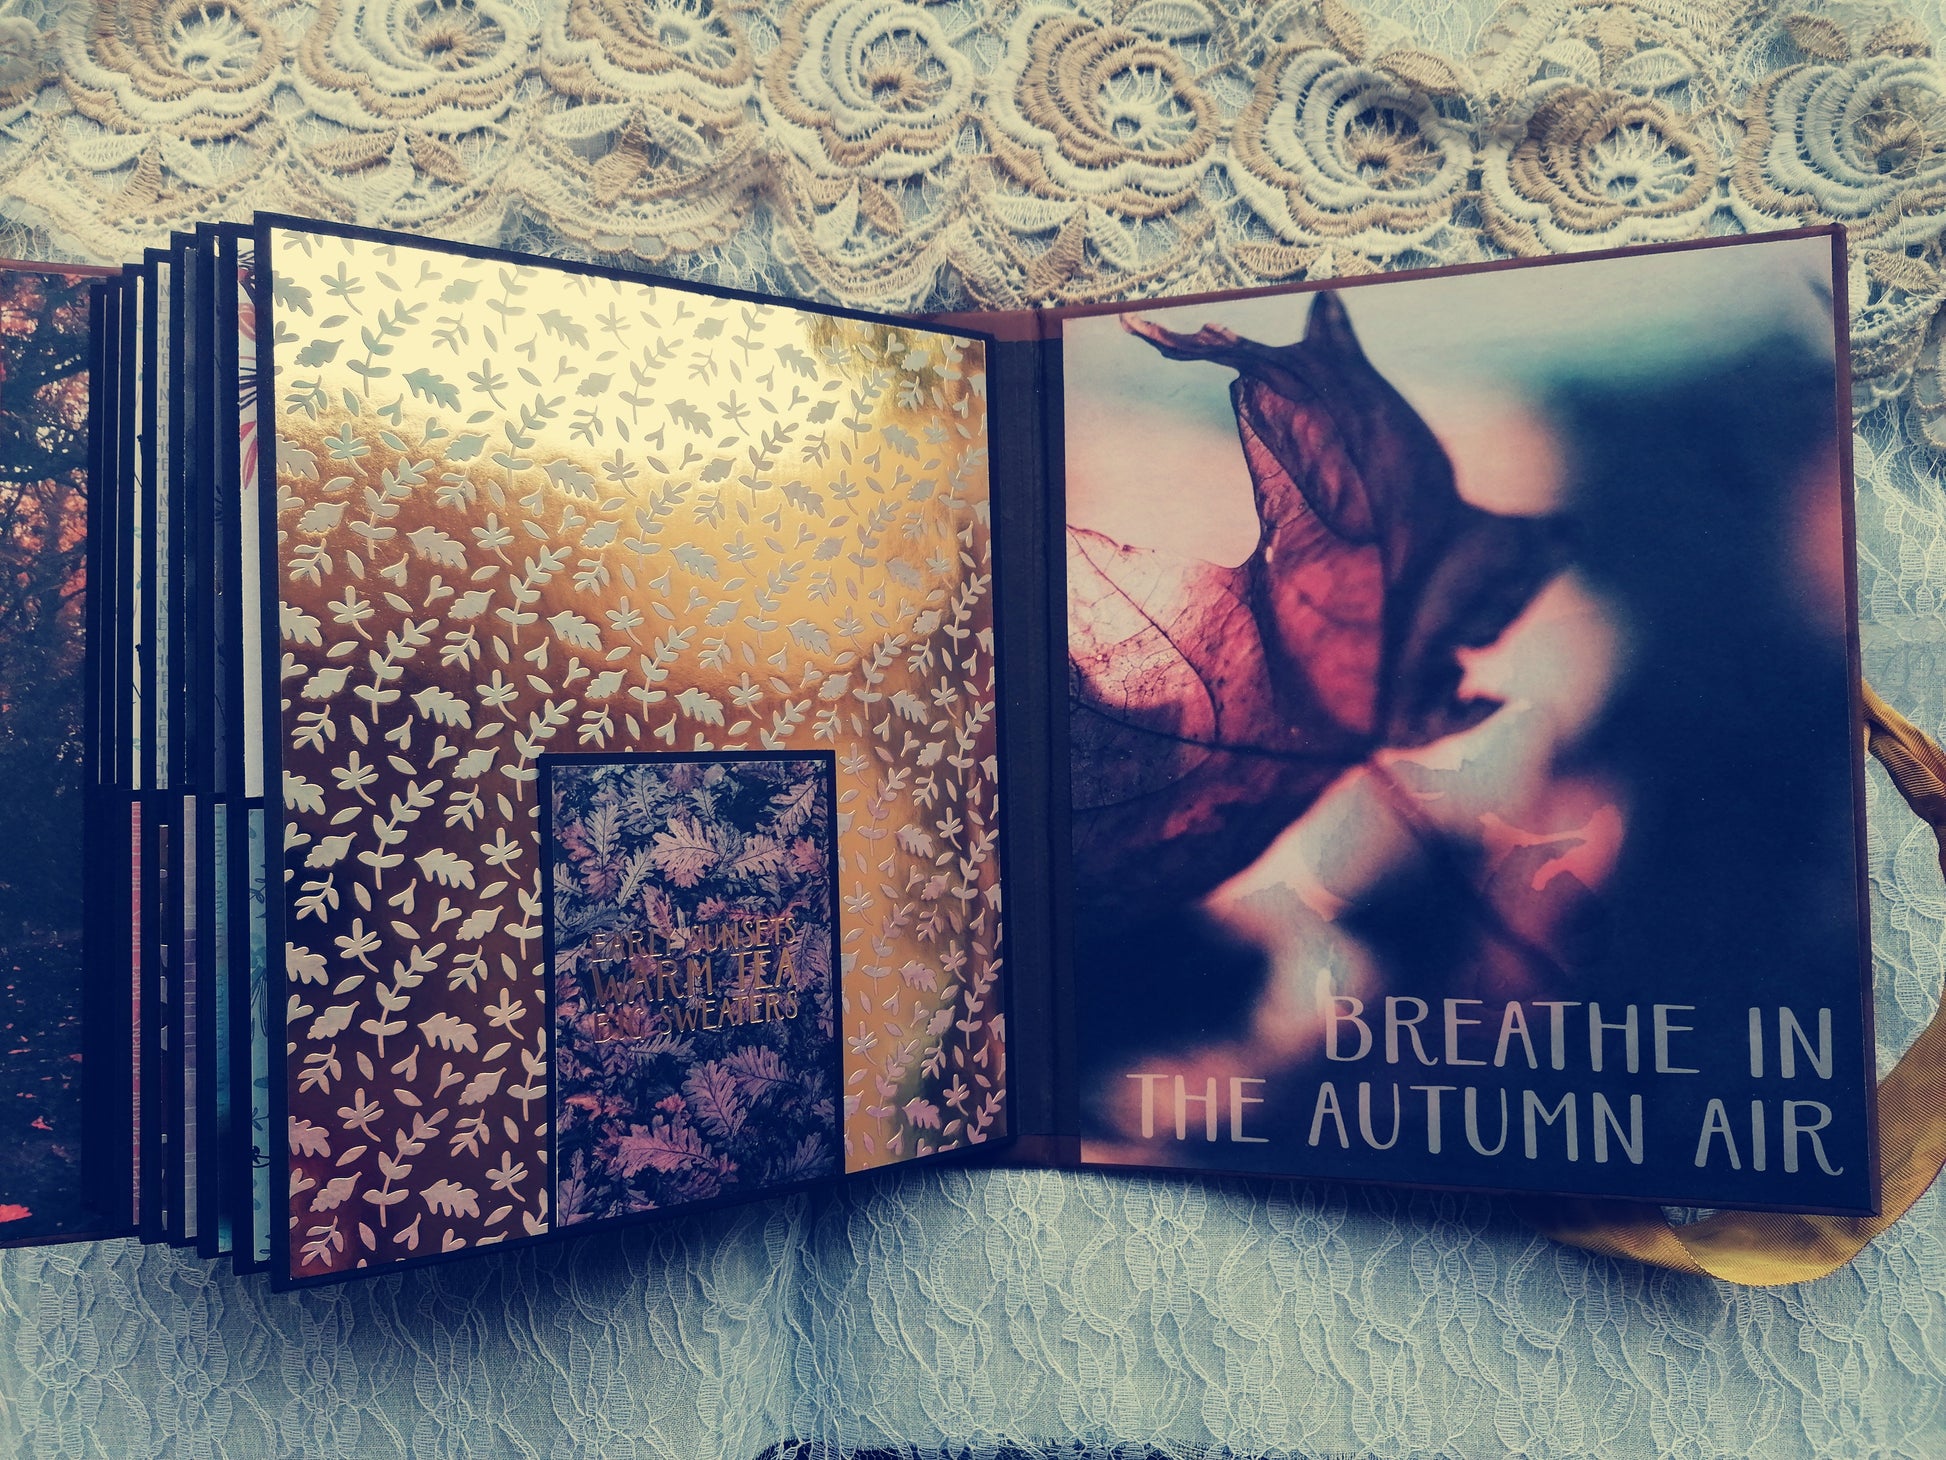 Album Foto ”Autumn”